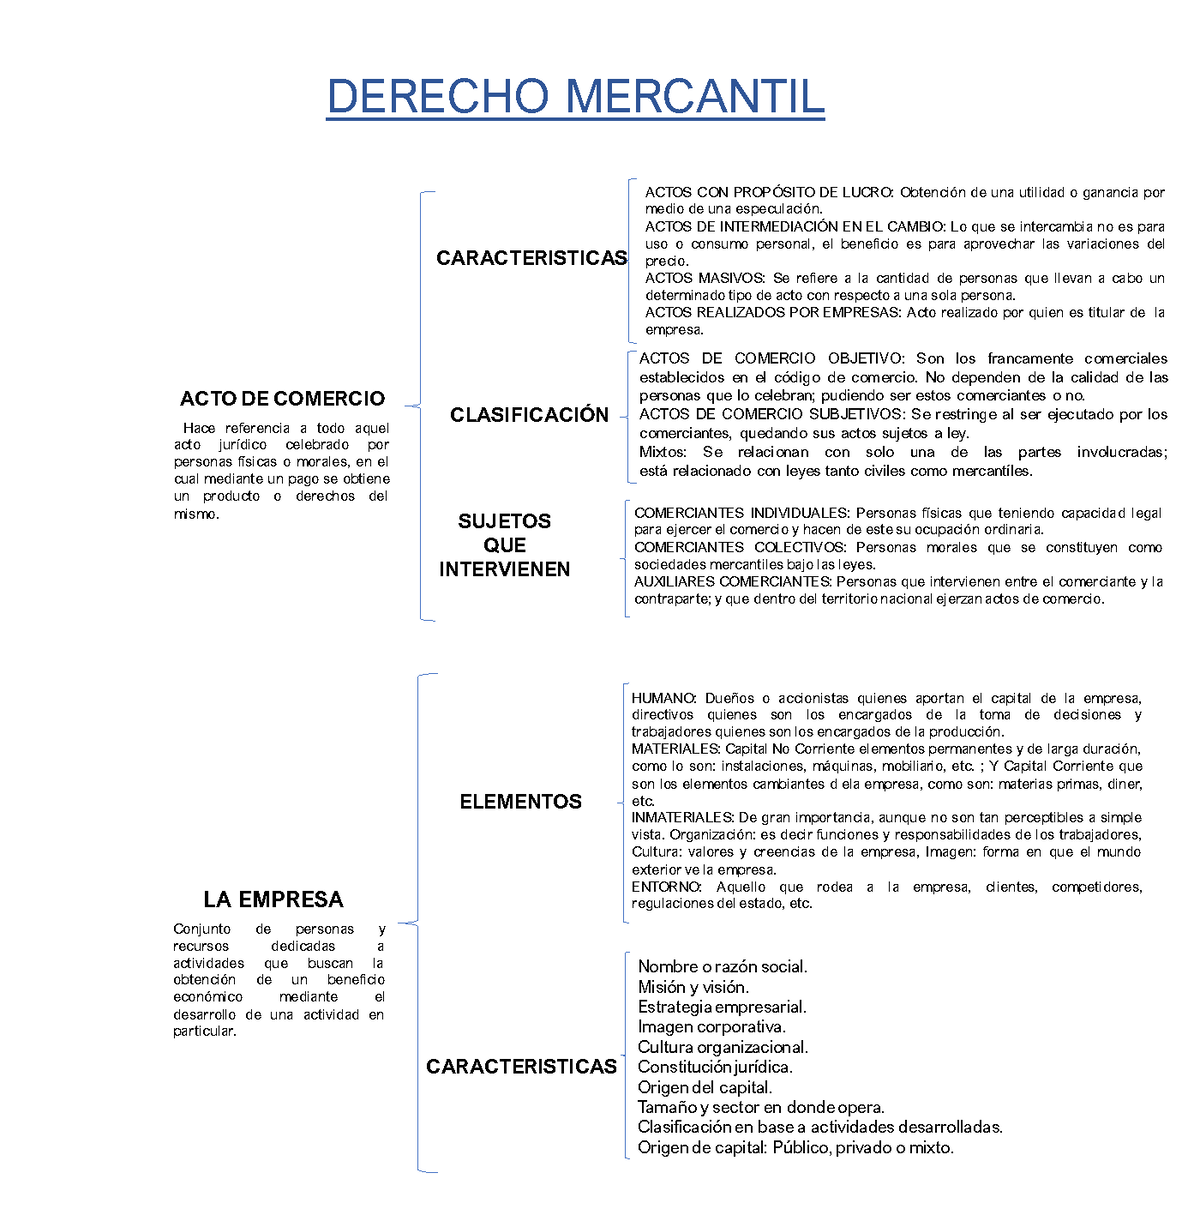 A2 Cuadro Sinoptico Derecho Mercantil Actos De Comercio Objetivo Son Los Francamente 5157